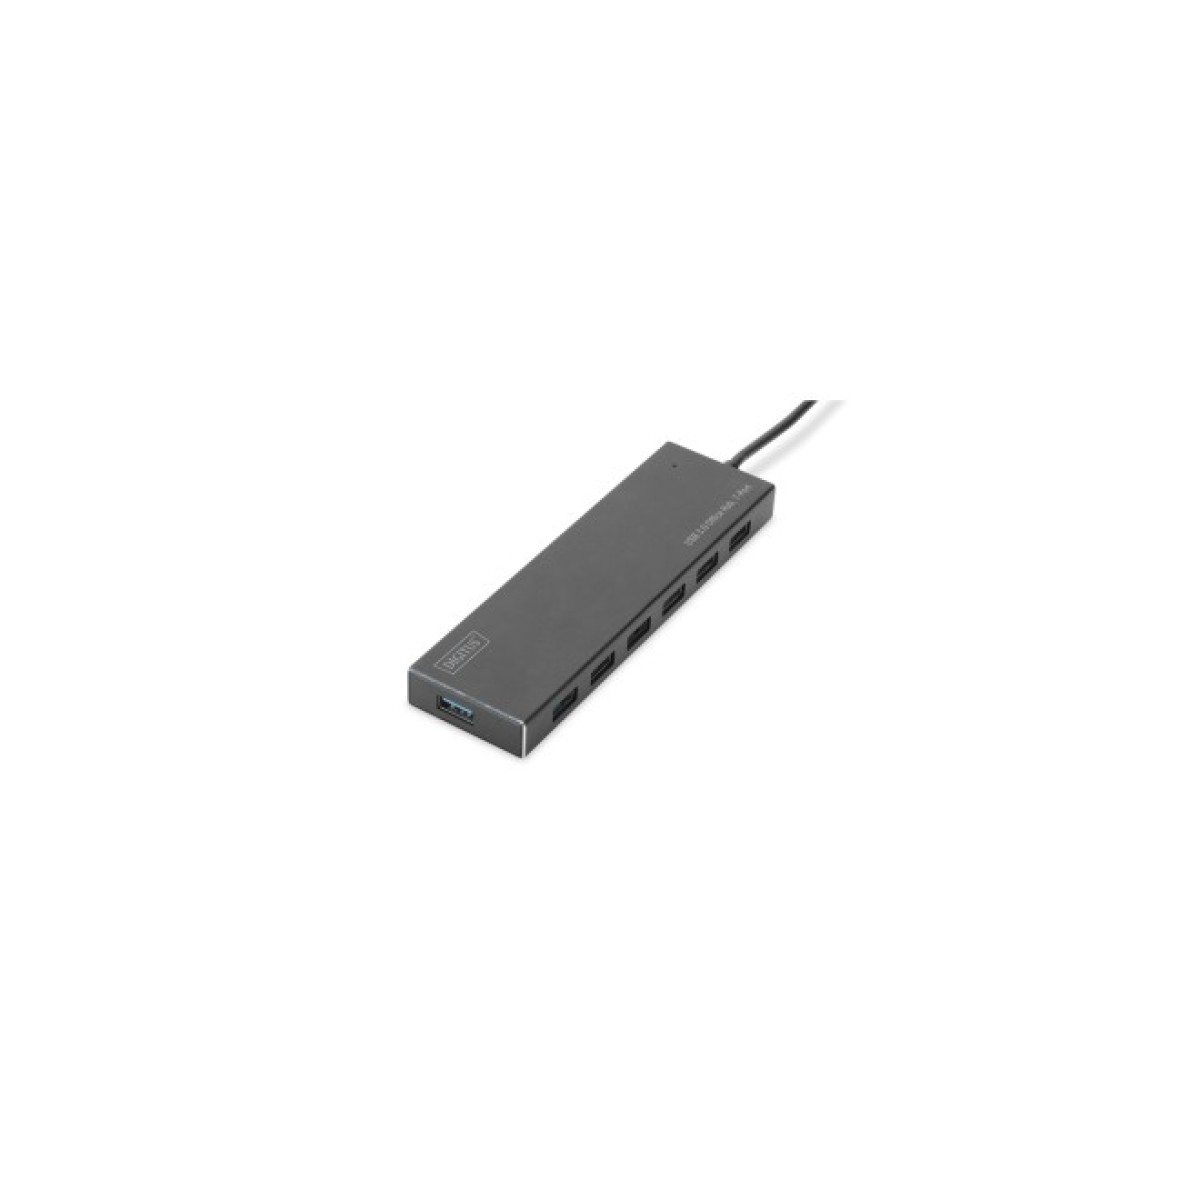 Концентратор Digitus USB 3.0 Hub, 7 Port (DA-70241-1) 256_256.jpg